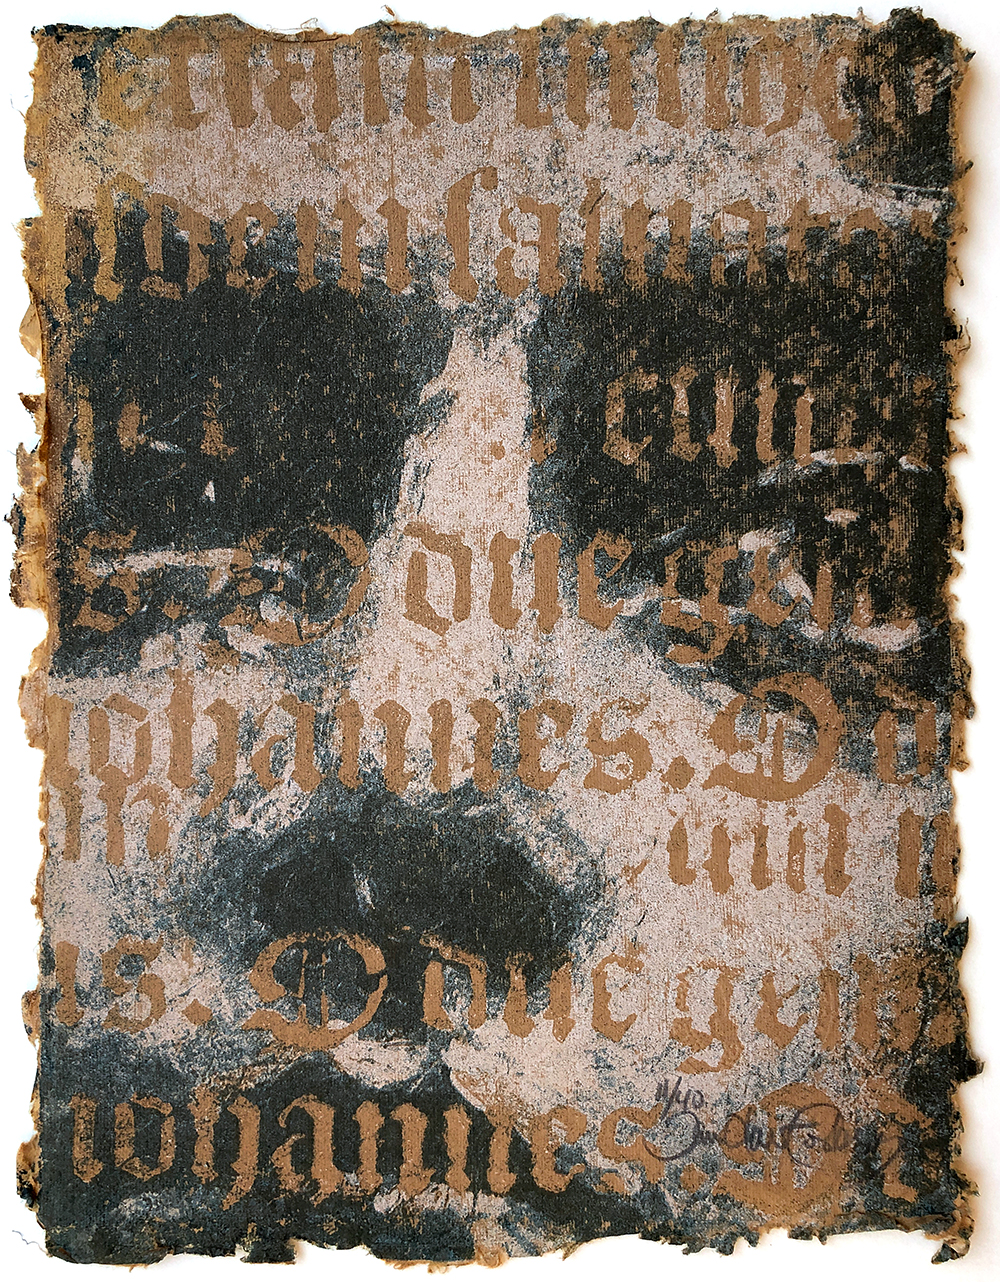 Forberg, Jan Olav - portrett på brunt papir med gotiskskrift 11/40